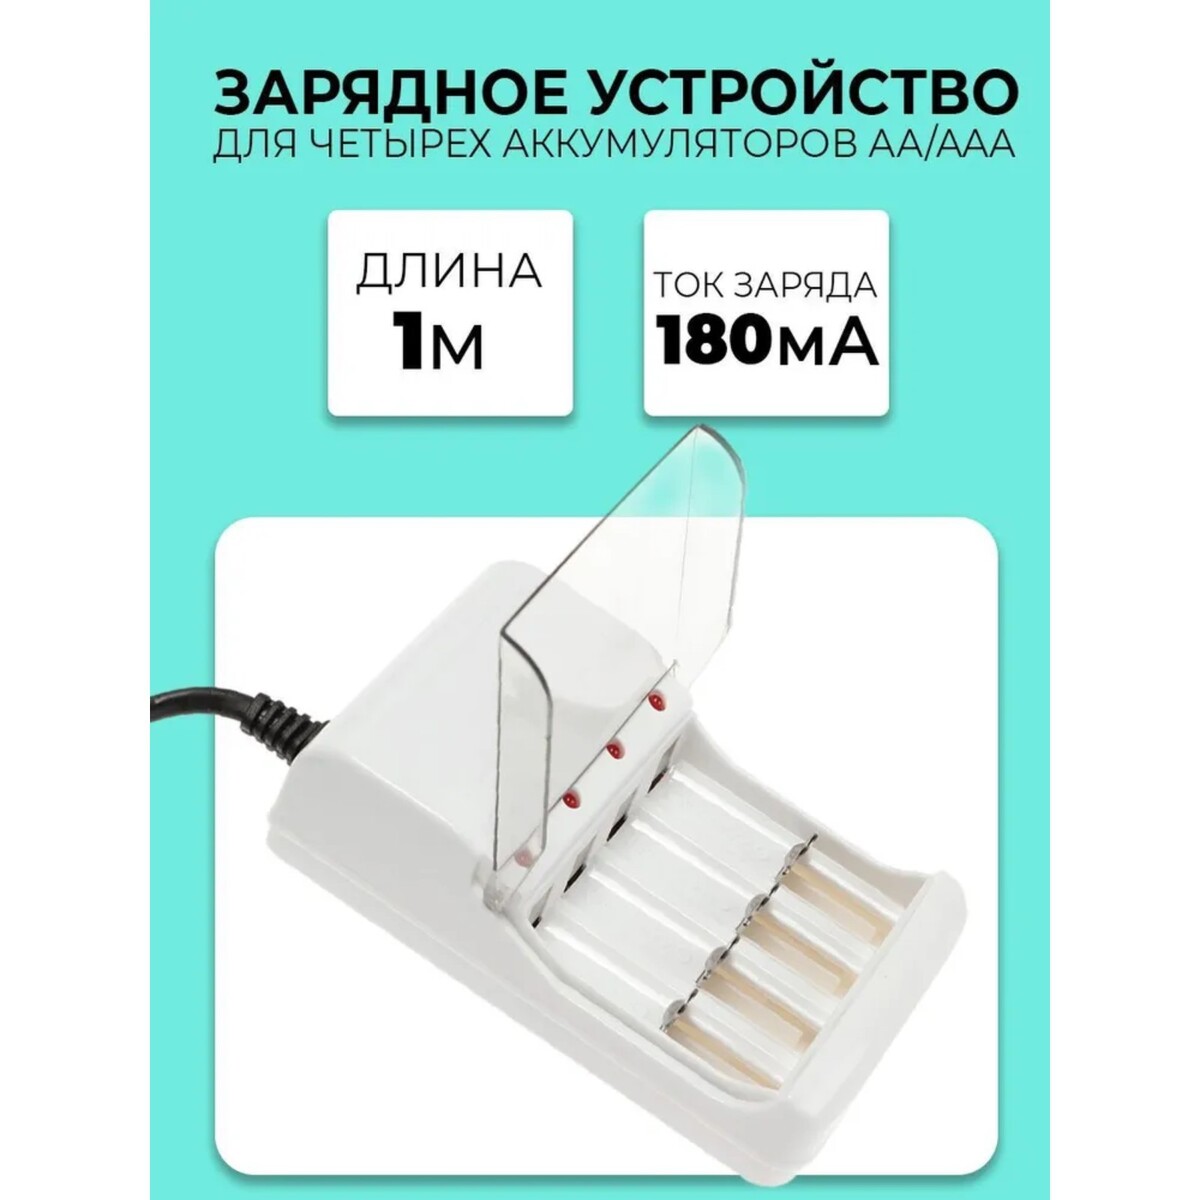 Зарядное устройство для четырех аккумуляторов аа или ааа chr-56, 1 м,ток заряда 180 ма,белое зарядное устройство kodak c8001b для аккумуляторов 2хaa aaa usb белое